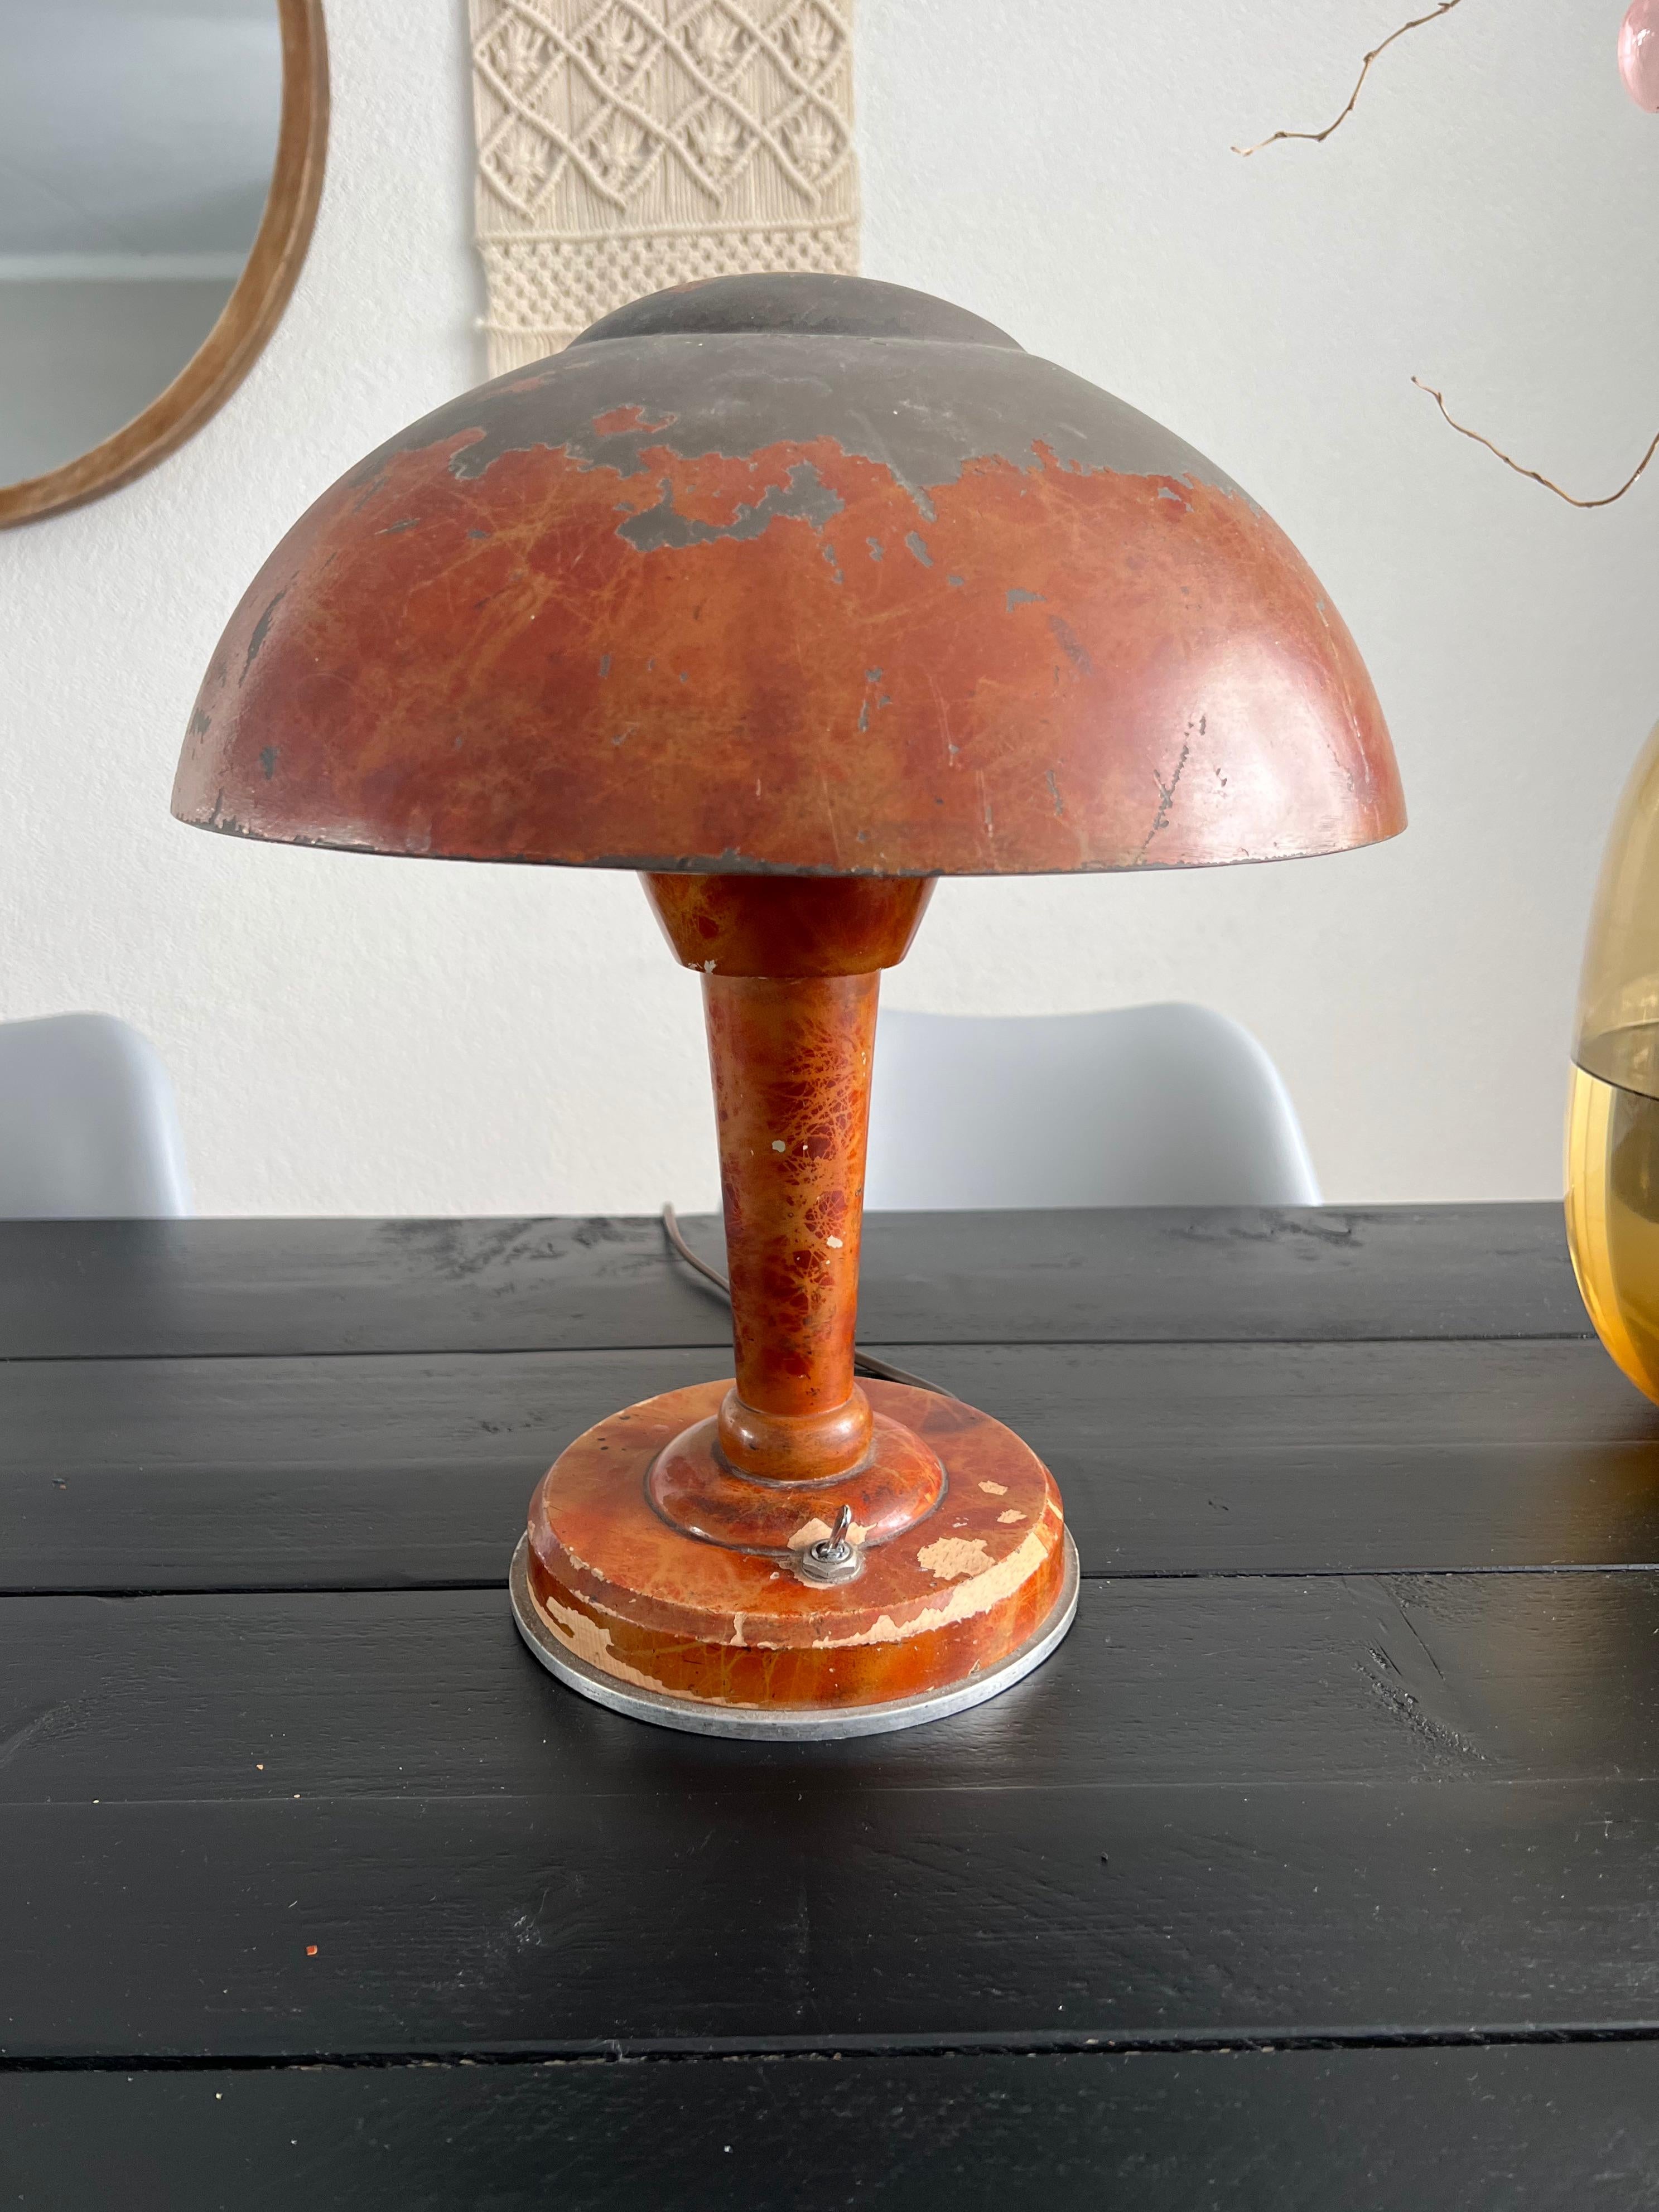 100% unrestauriert und im Originalzustand, Pilz Design Tischlampe.

Dieses sehr ungewöhnliche und modernistische Beleuchtungskunstwerk trägt die Herstellermarke M. Sabino im Sockel und ist ein weiterer unserer letzten großen 